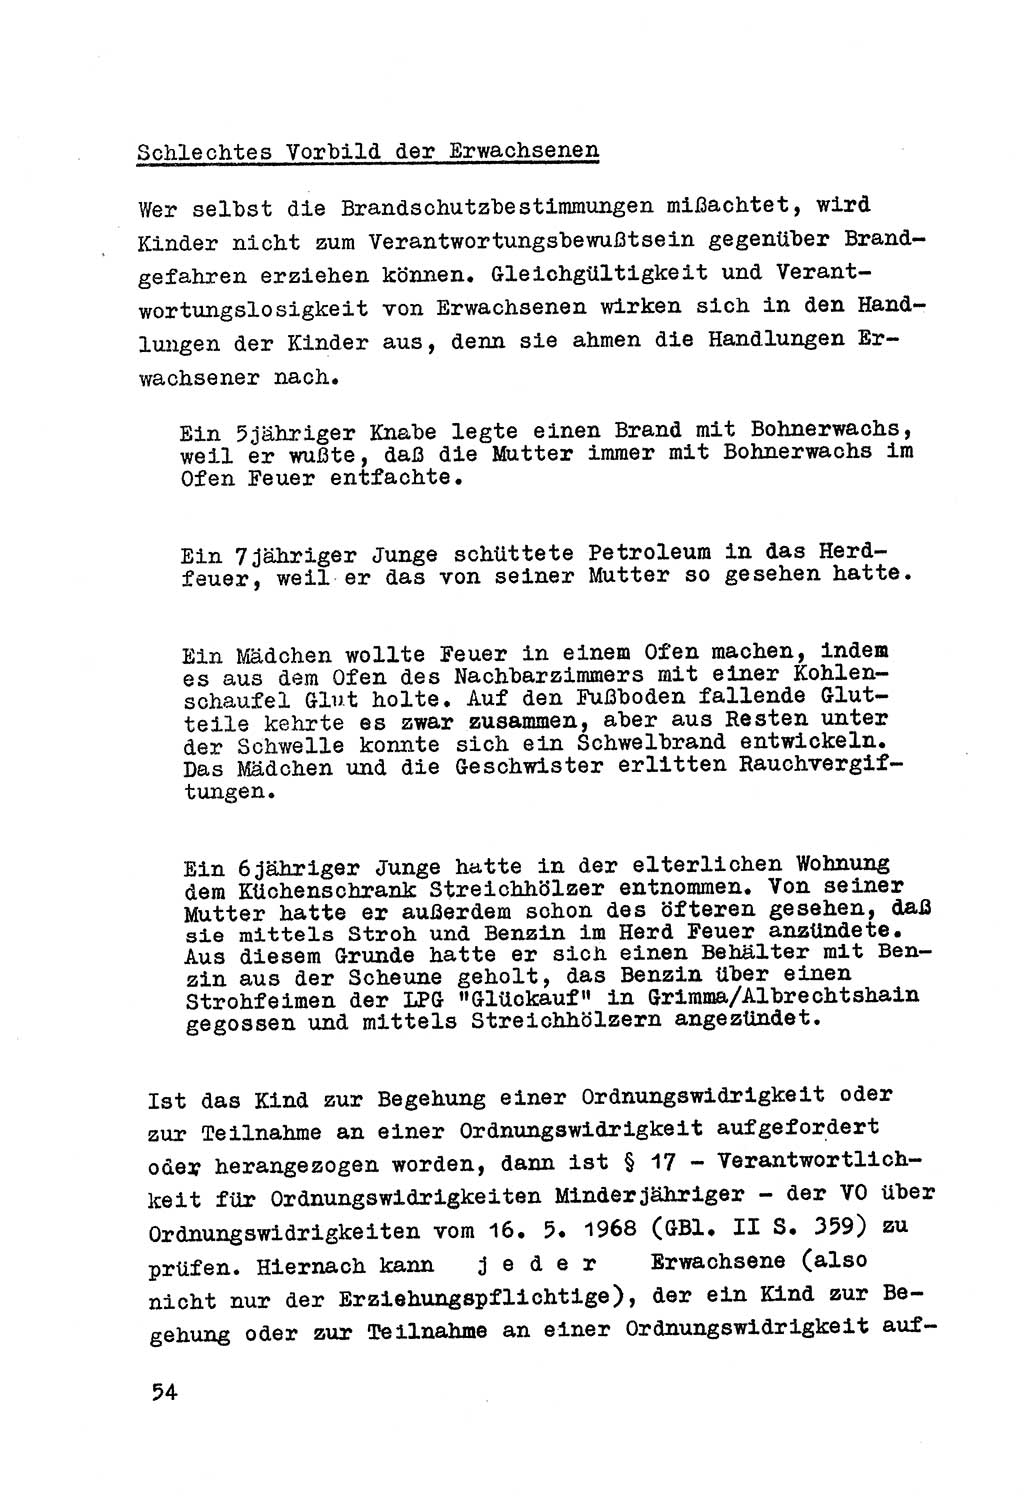 Strafrecht der DDR (Deutsche Demokratische Republik), Besonderer Teil, Lehrmaterial, Heft 7 1970, Seite 54 (Strafr. DDR BT Lehrmat. H. 7 1970, S. 54)